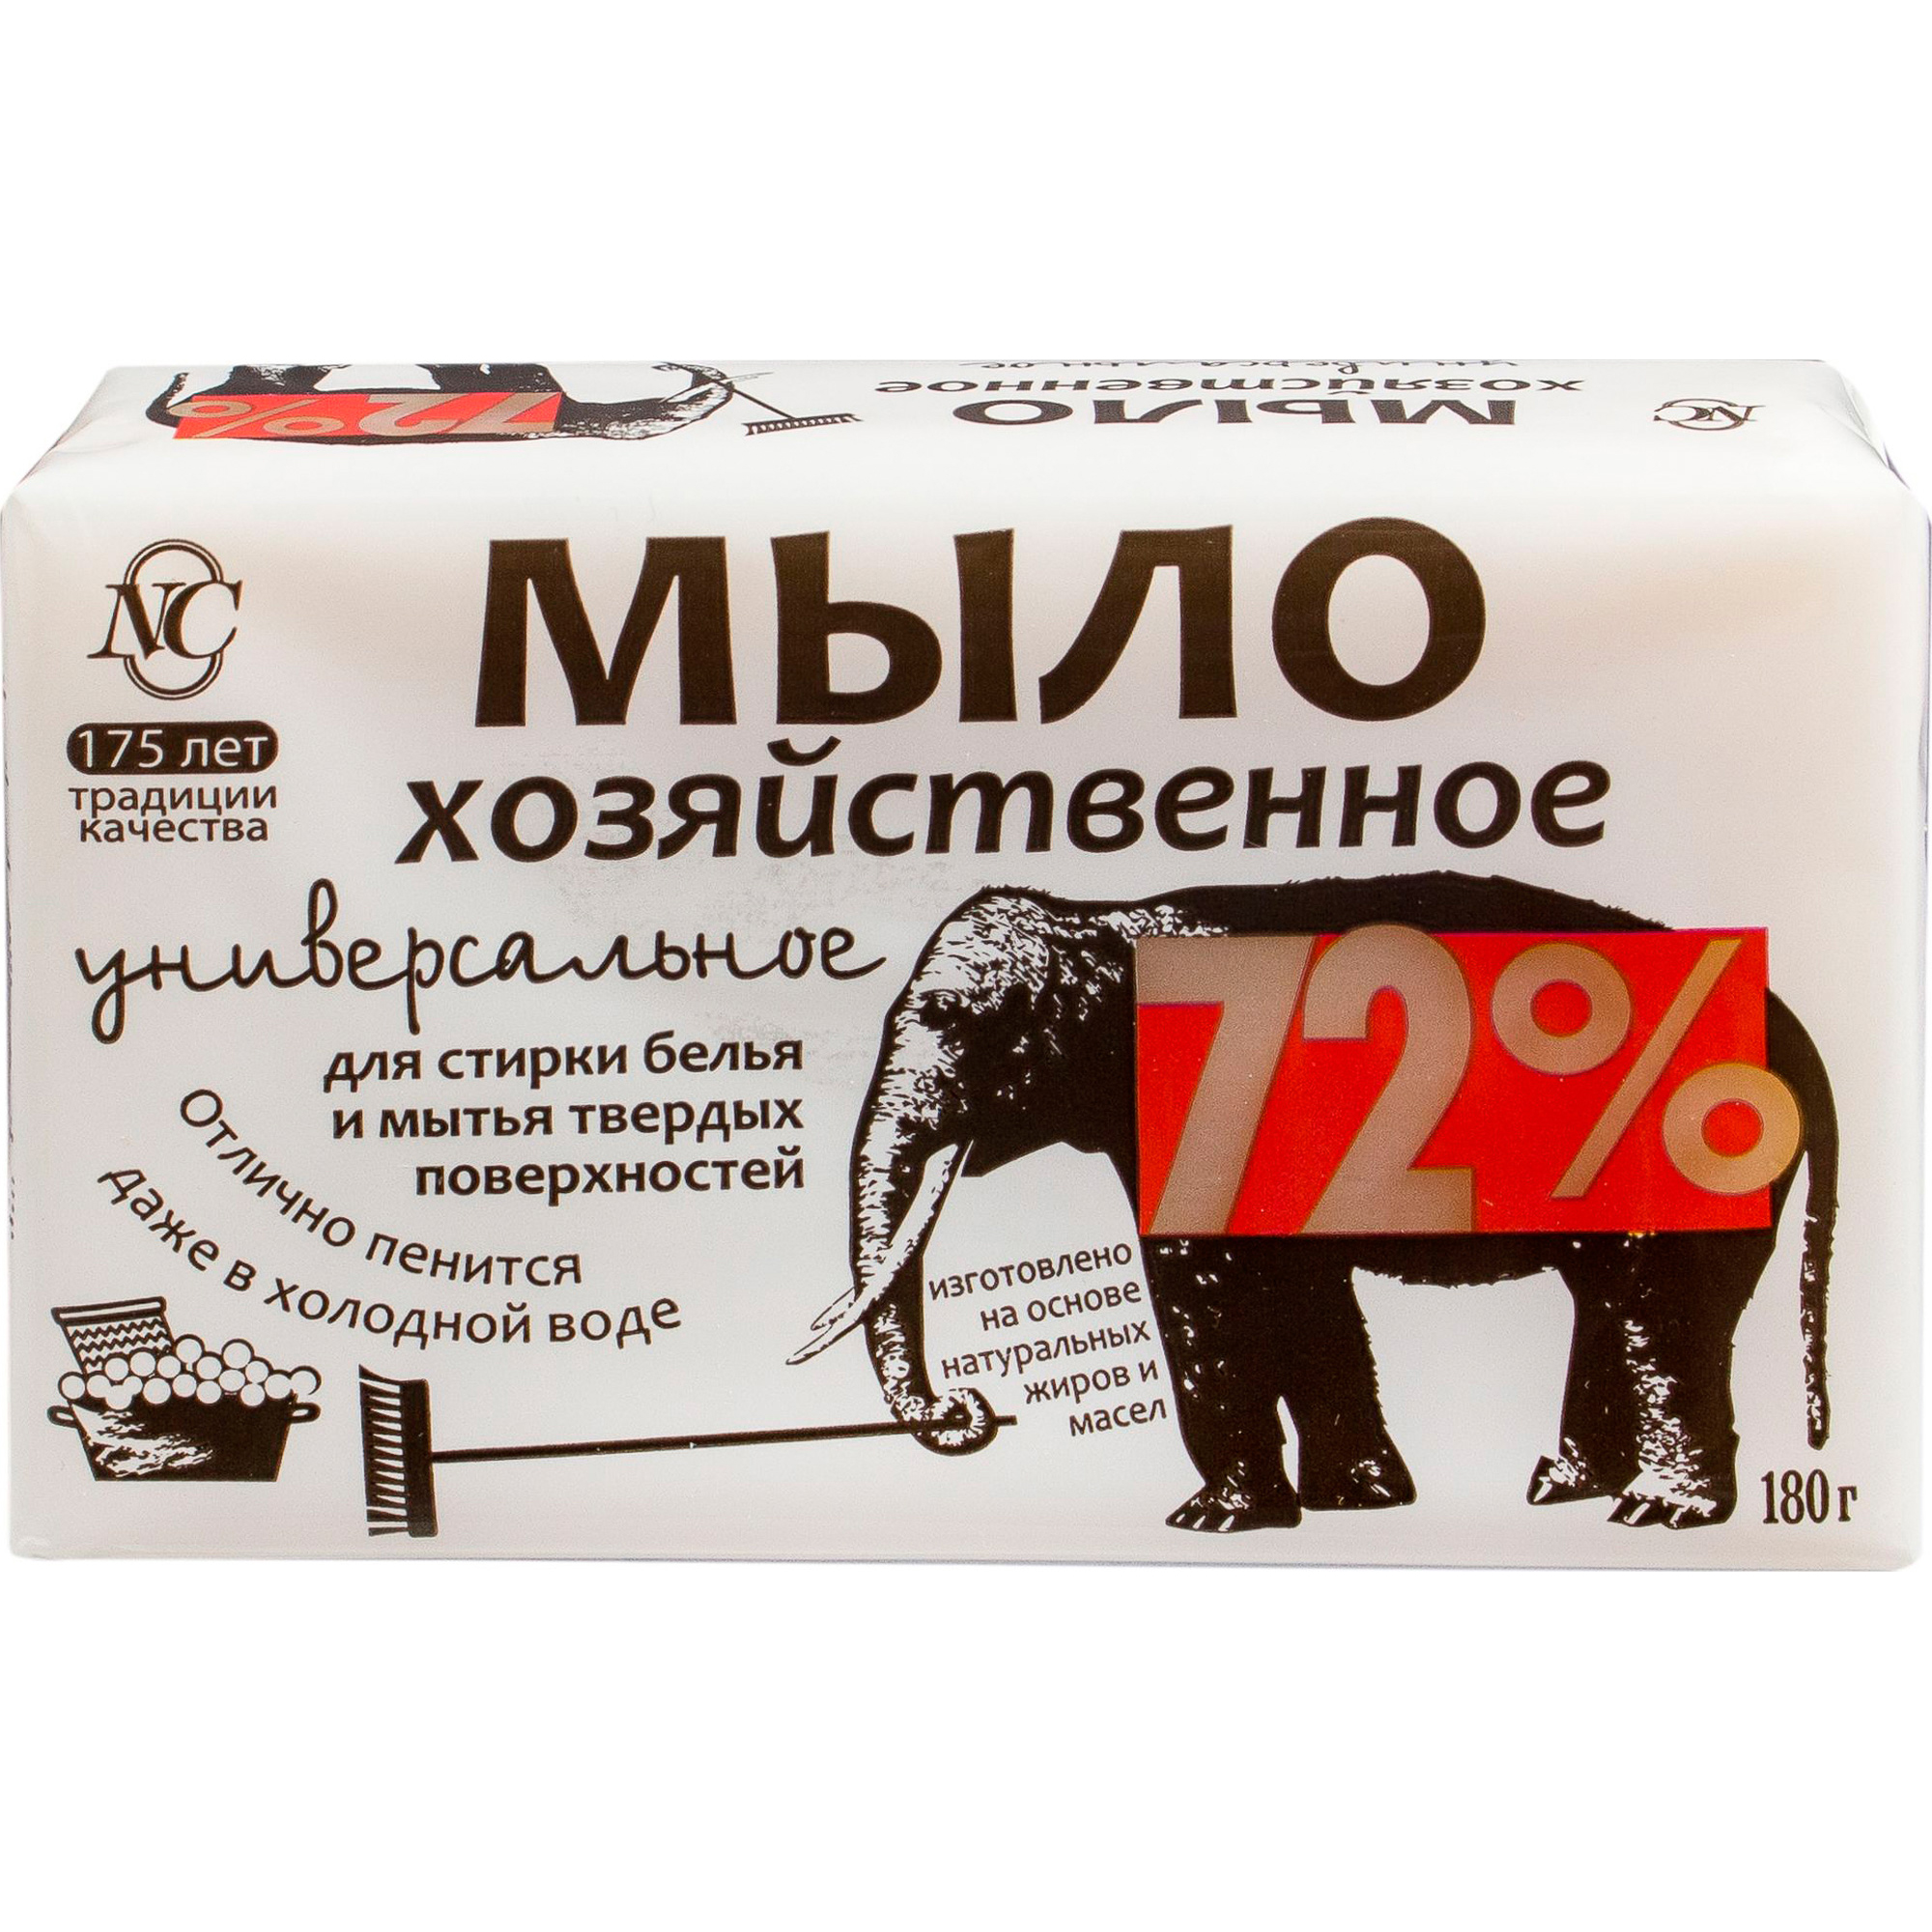 Хозяйственное мыло Невская Косметика Универсальное 72% 180 г мыло хозяйственное 180г 72% универсальное